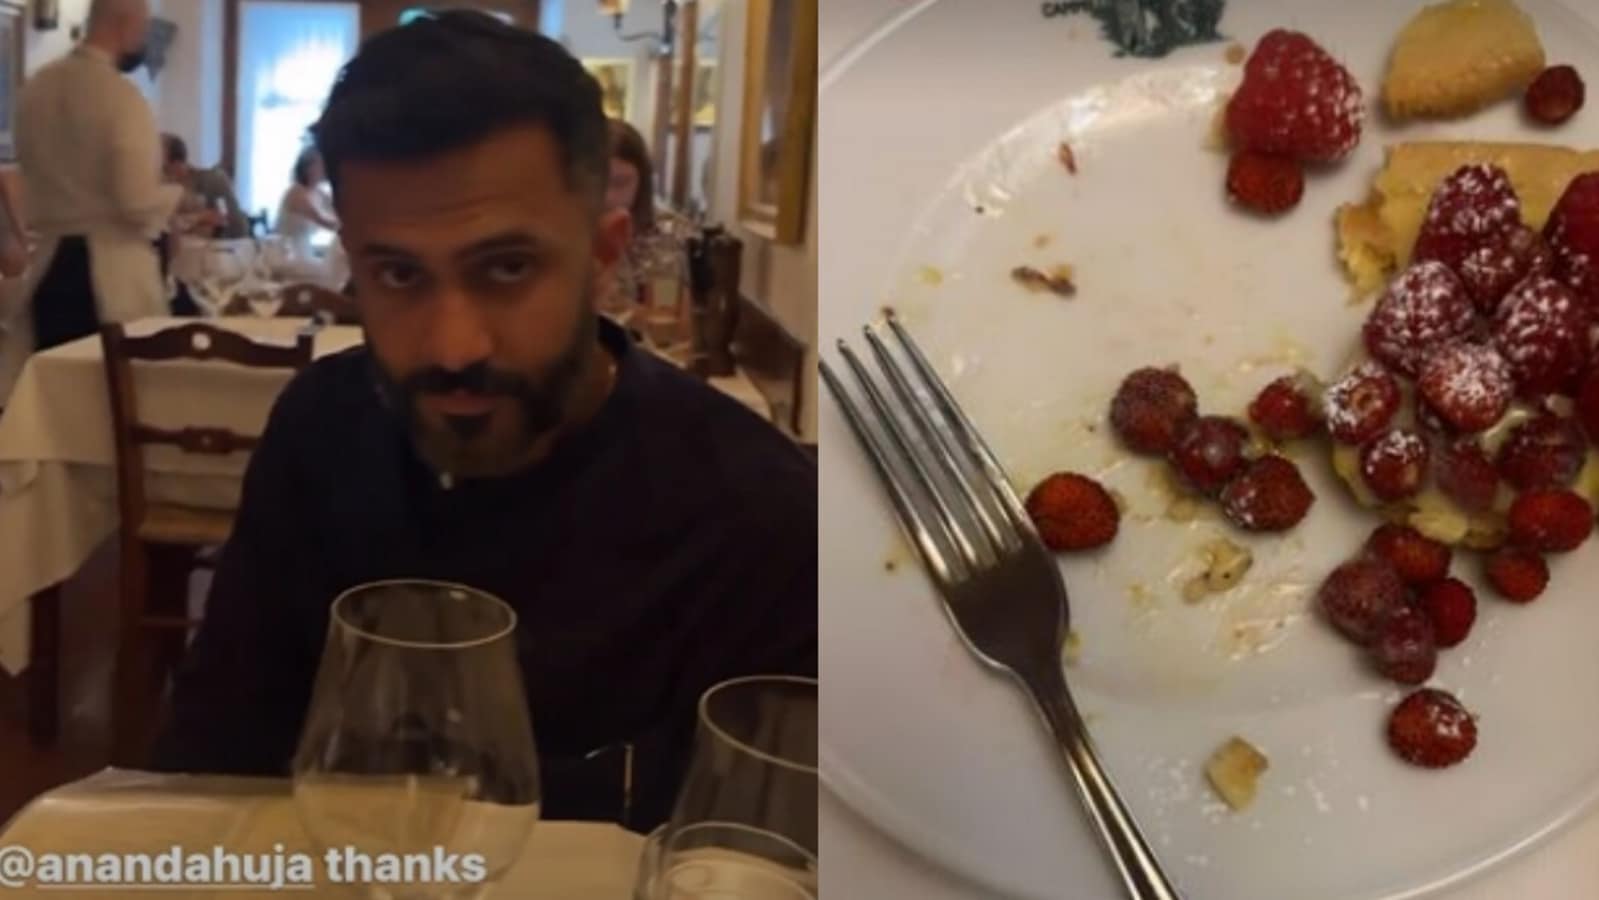 Sonam Kapoor, Anand Ahuja si godono la giornata dei bambini in Italia, un pasto delizioso alla volta